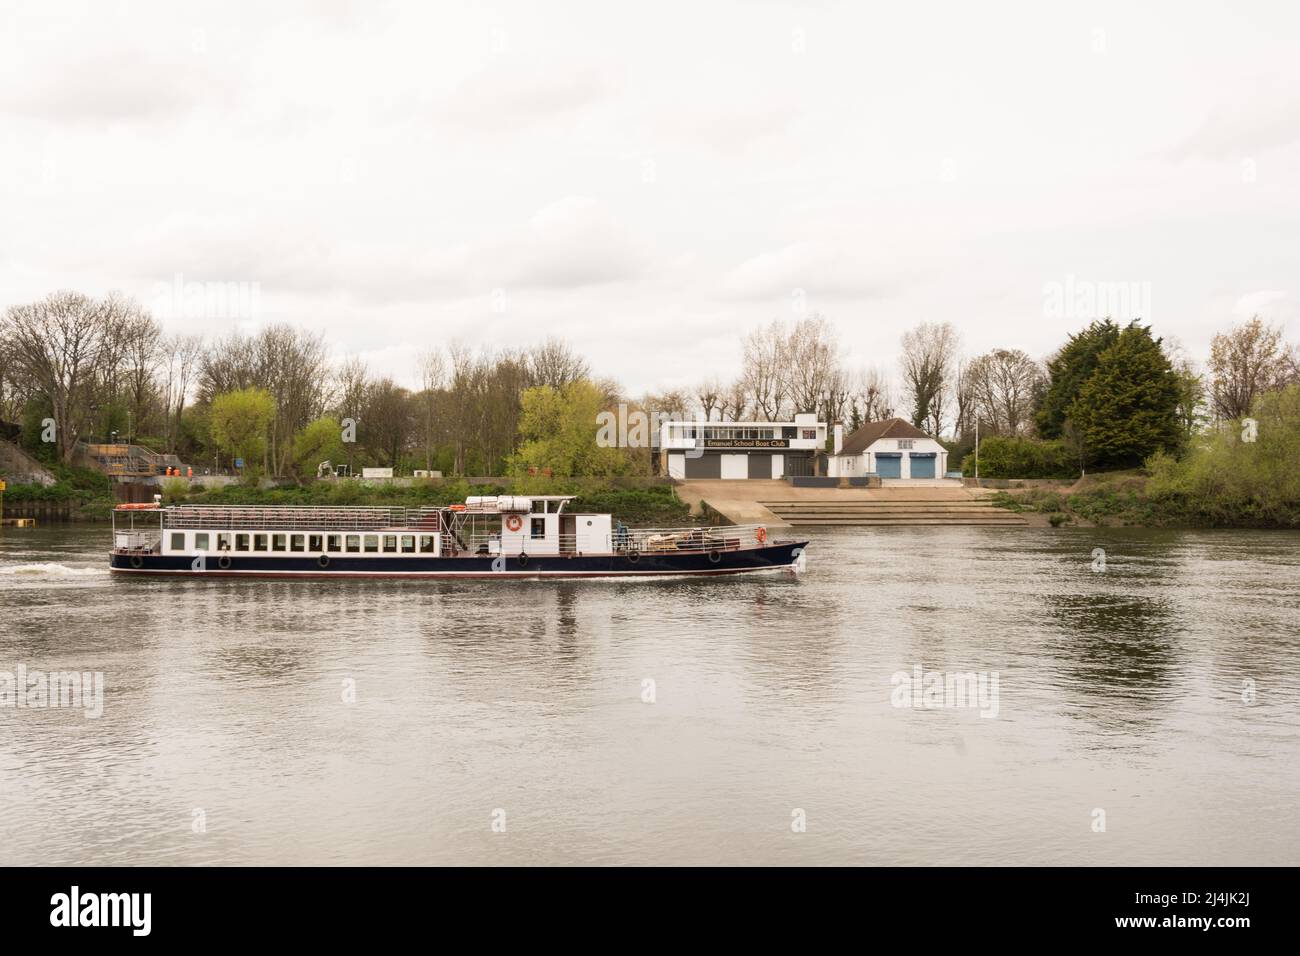 Un crucero de placer vacío pasando frente al Emanuel School Boat Club en un plácido río Támesis en Barnes, al suroeste de Londres, Inglaterra, Reino Unido Foto de stock